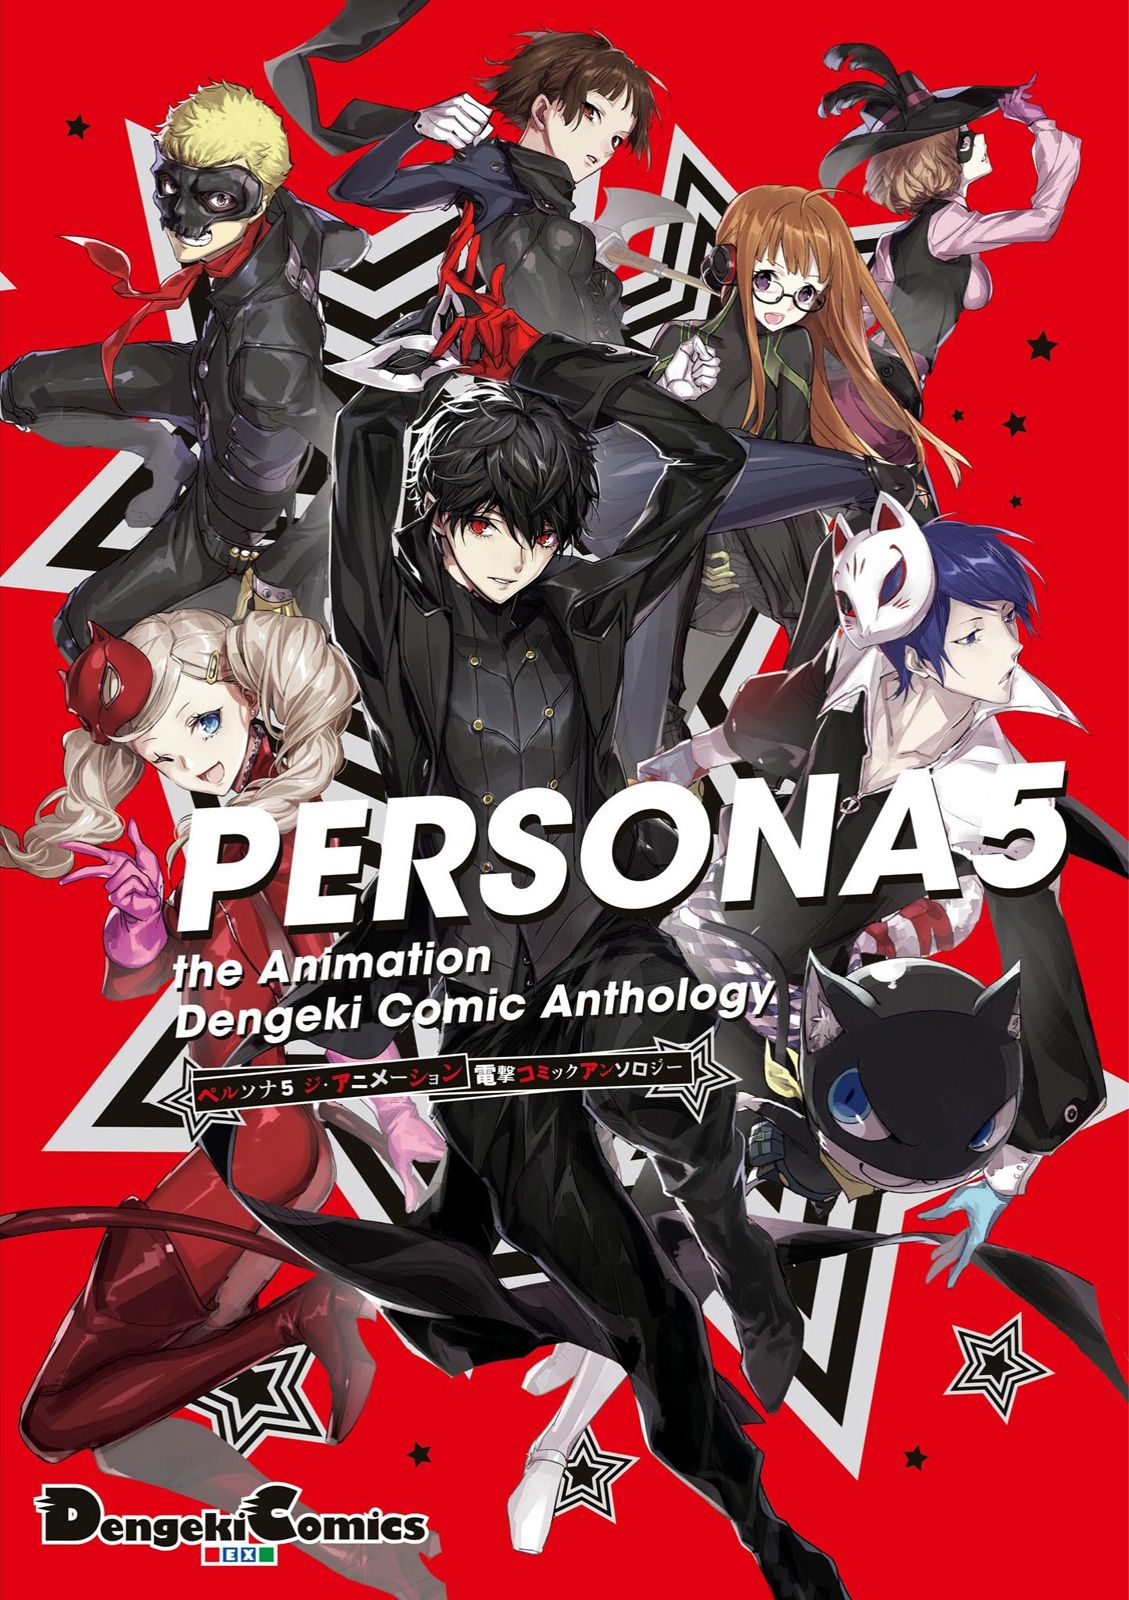 Persona 5 the Animation: Dengeki Comic Anthology